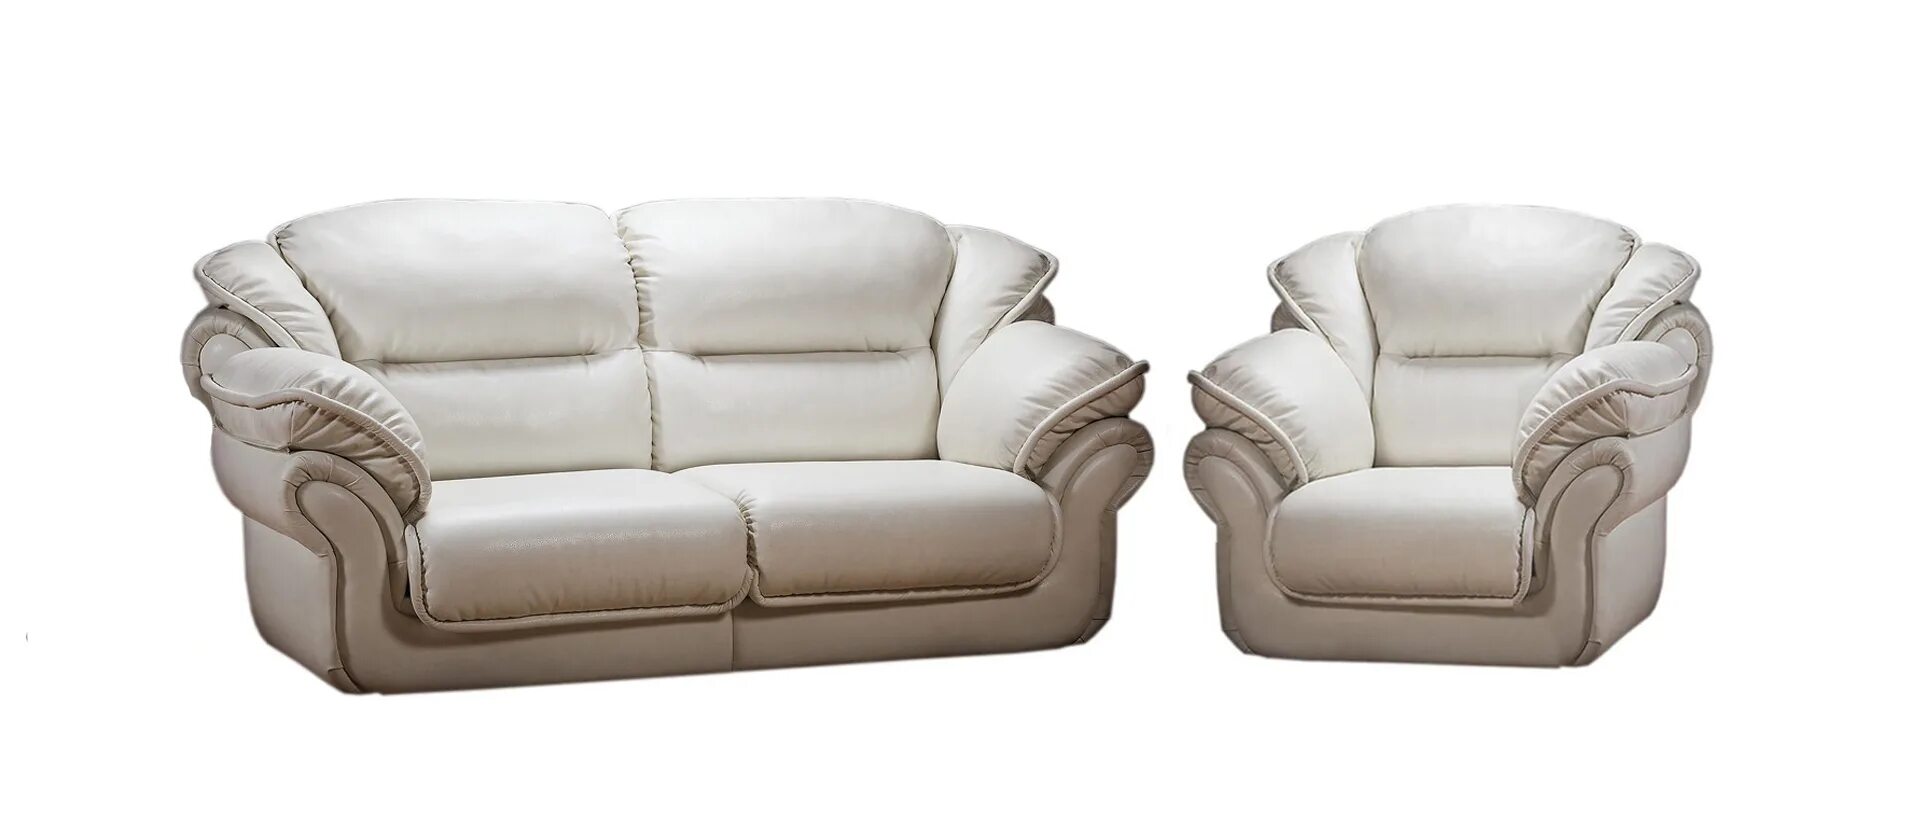 Каталог дуэт. Комплект мебели Адажио LAVSOFA. Диван Адажио LAVSOFA. Диван Адажио 2 LAVSOFA. Диван и два кресла "Кинг" (3м+12+12), натуральная кожа № 1060.